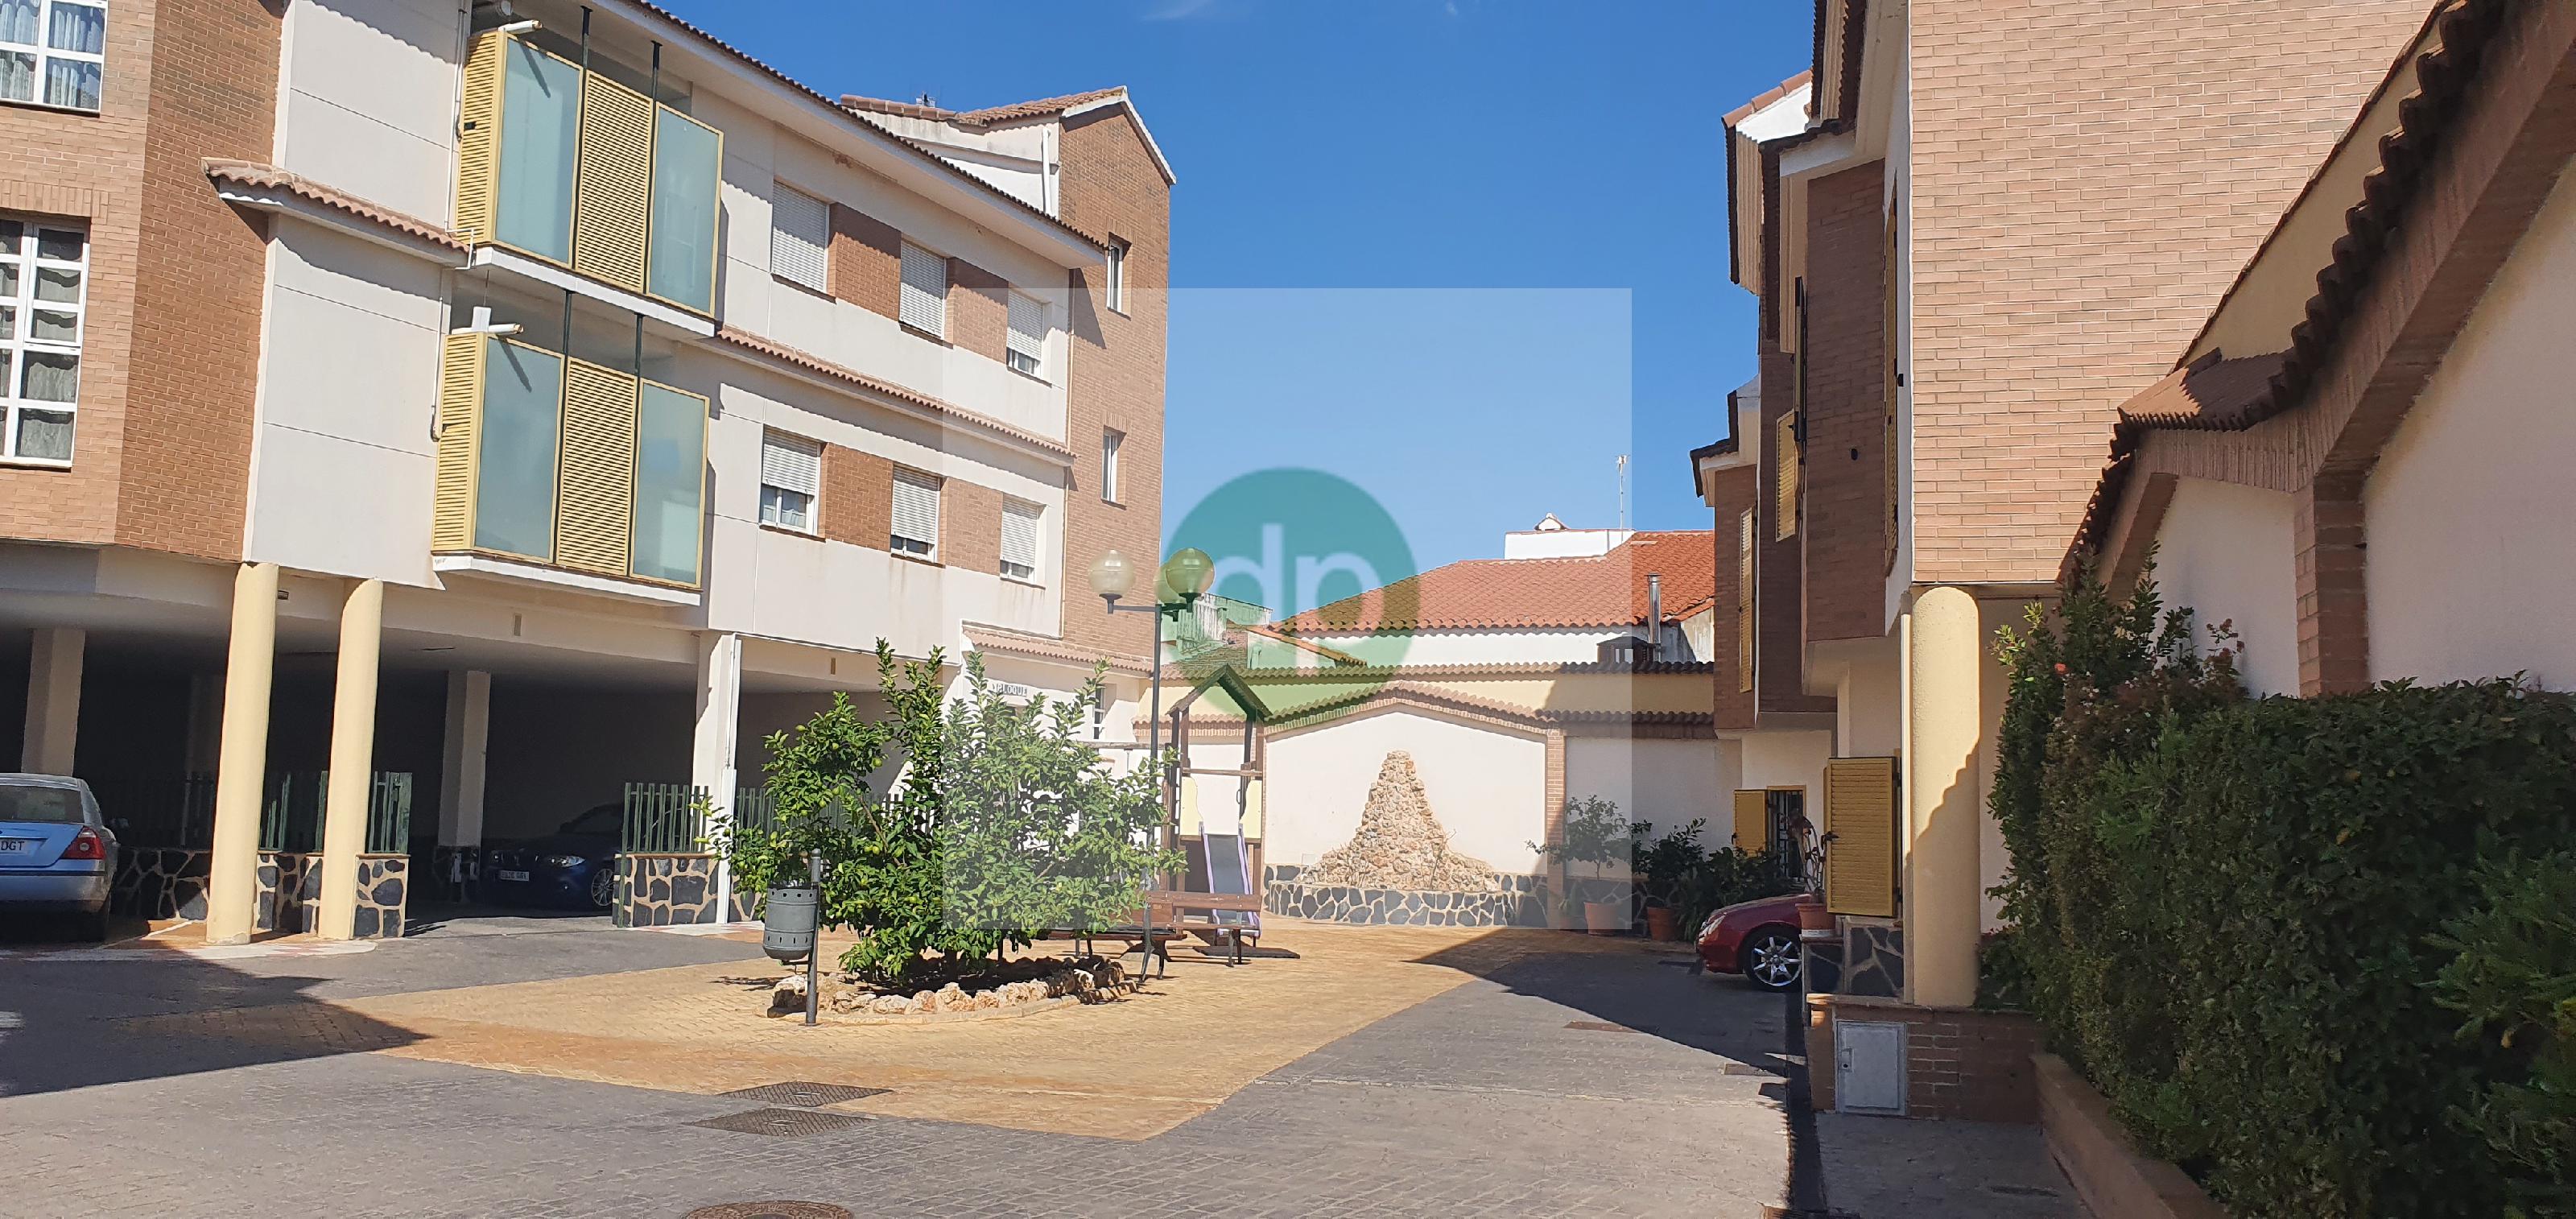 Imagen 3 Casa Adosada en venta en Villanueva De La Serena / Centrico, a pocos minutos de Plaza de E...